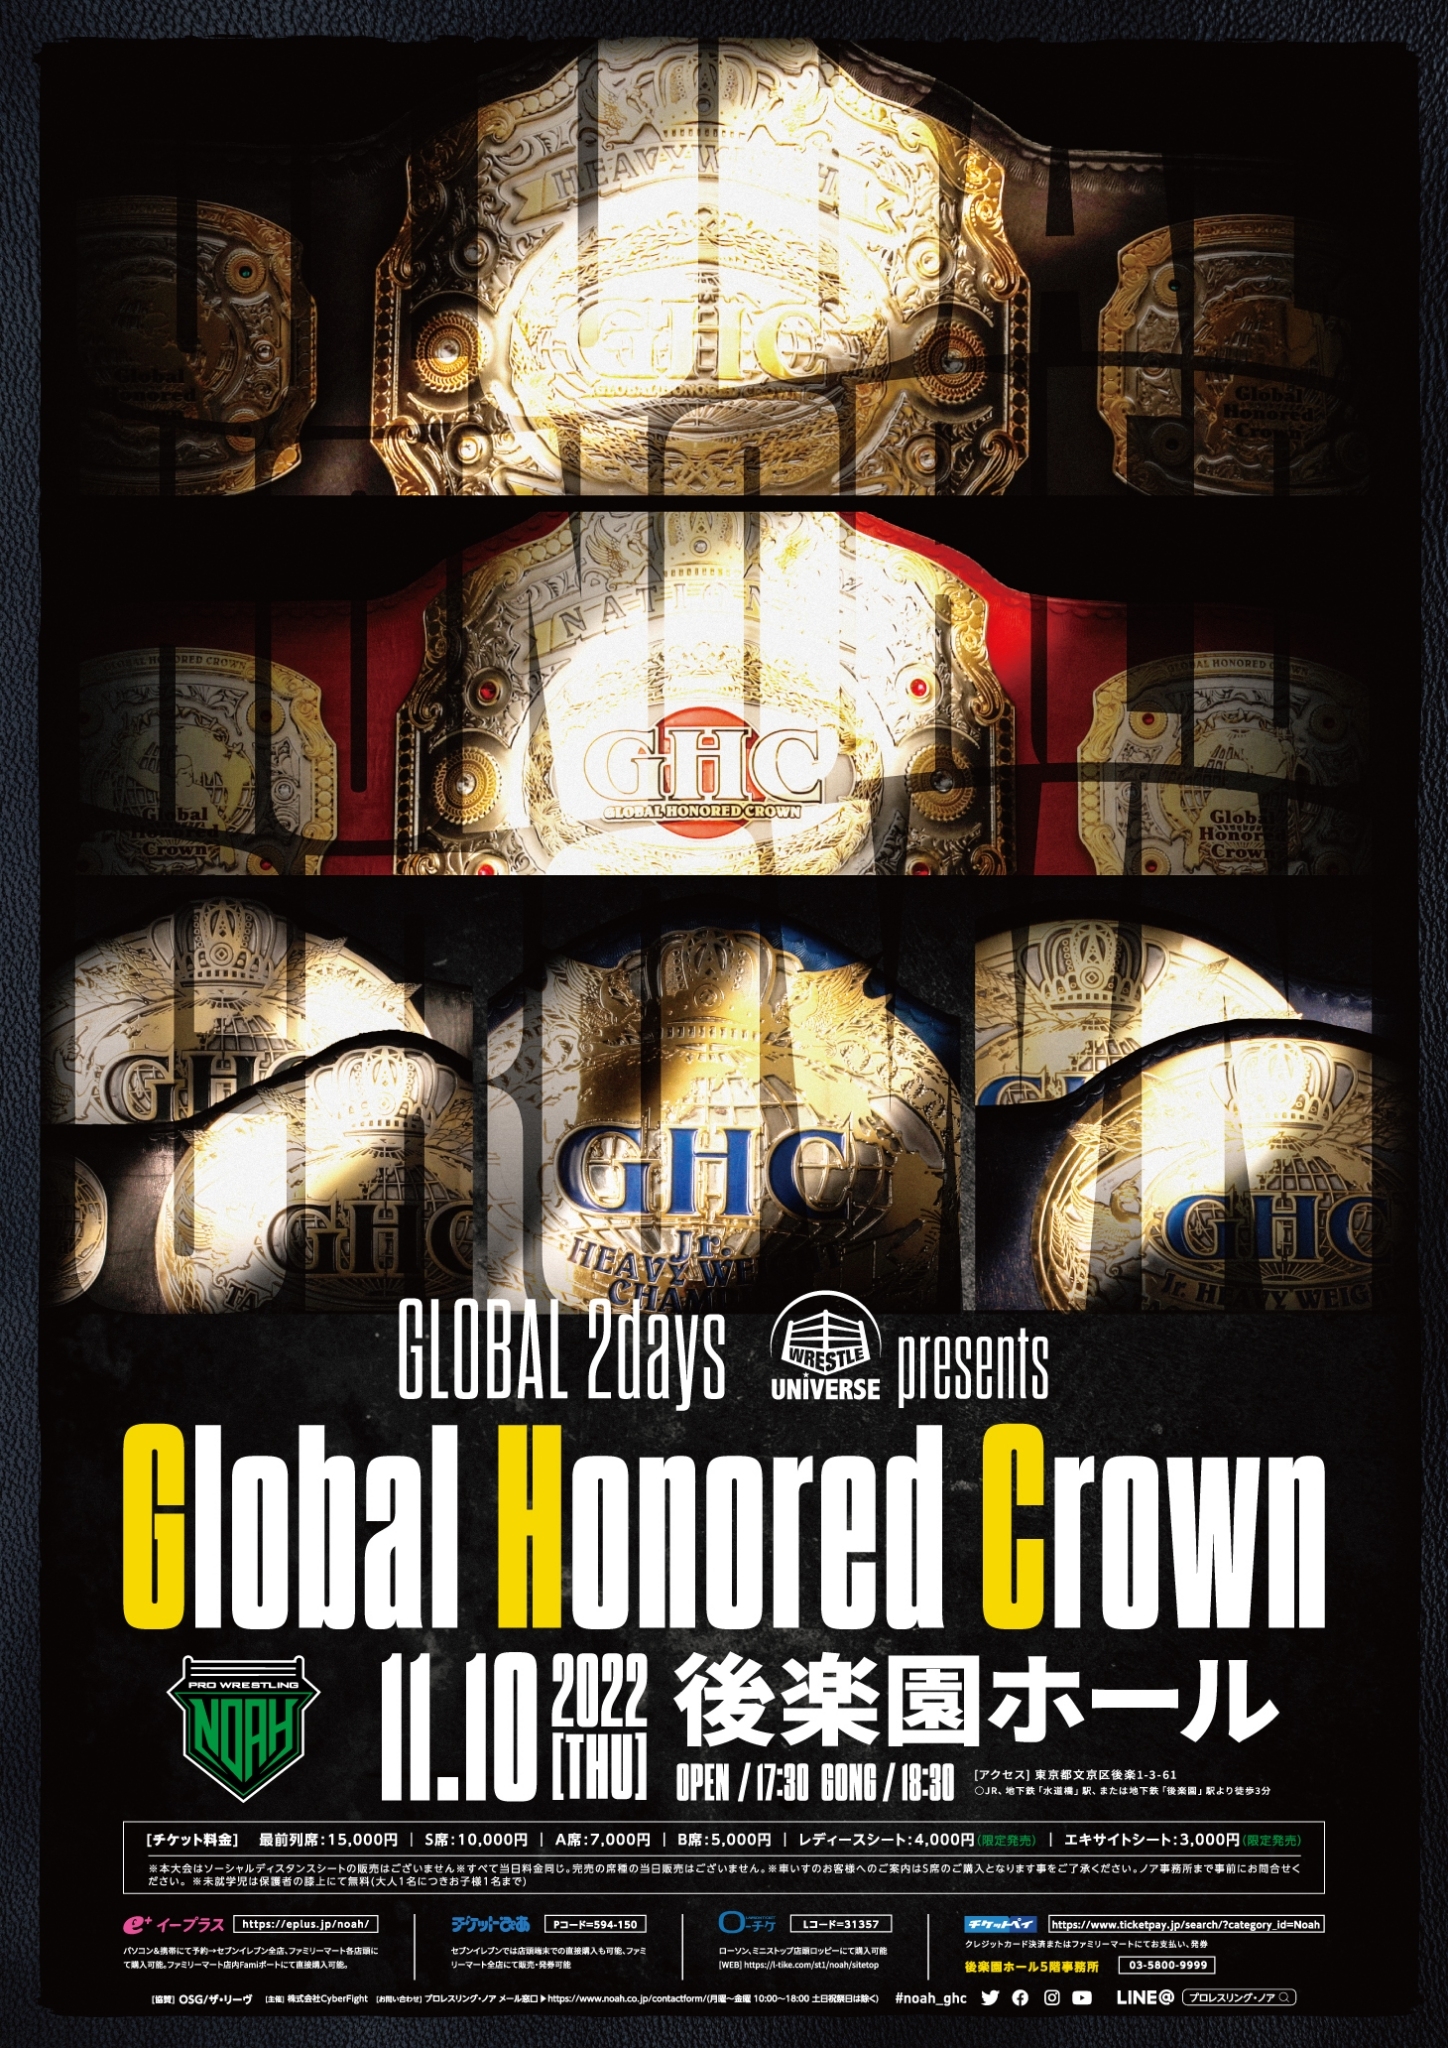 22年11月10日 木 Global2days Wrestle Universe Presents Global Honored Crown プロレスリング ノア公式サイト Pro Wrestling Noah Official Site